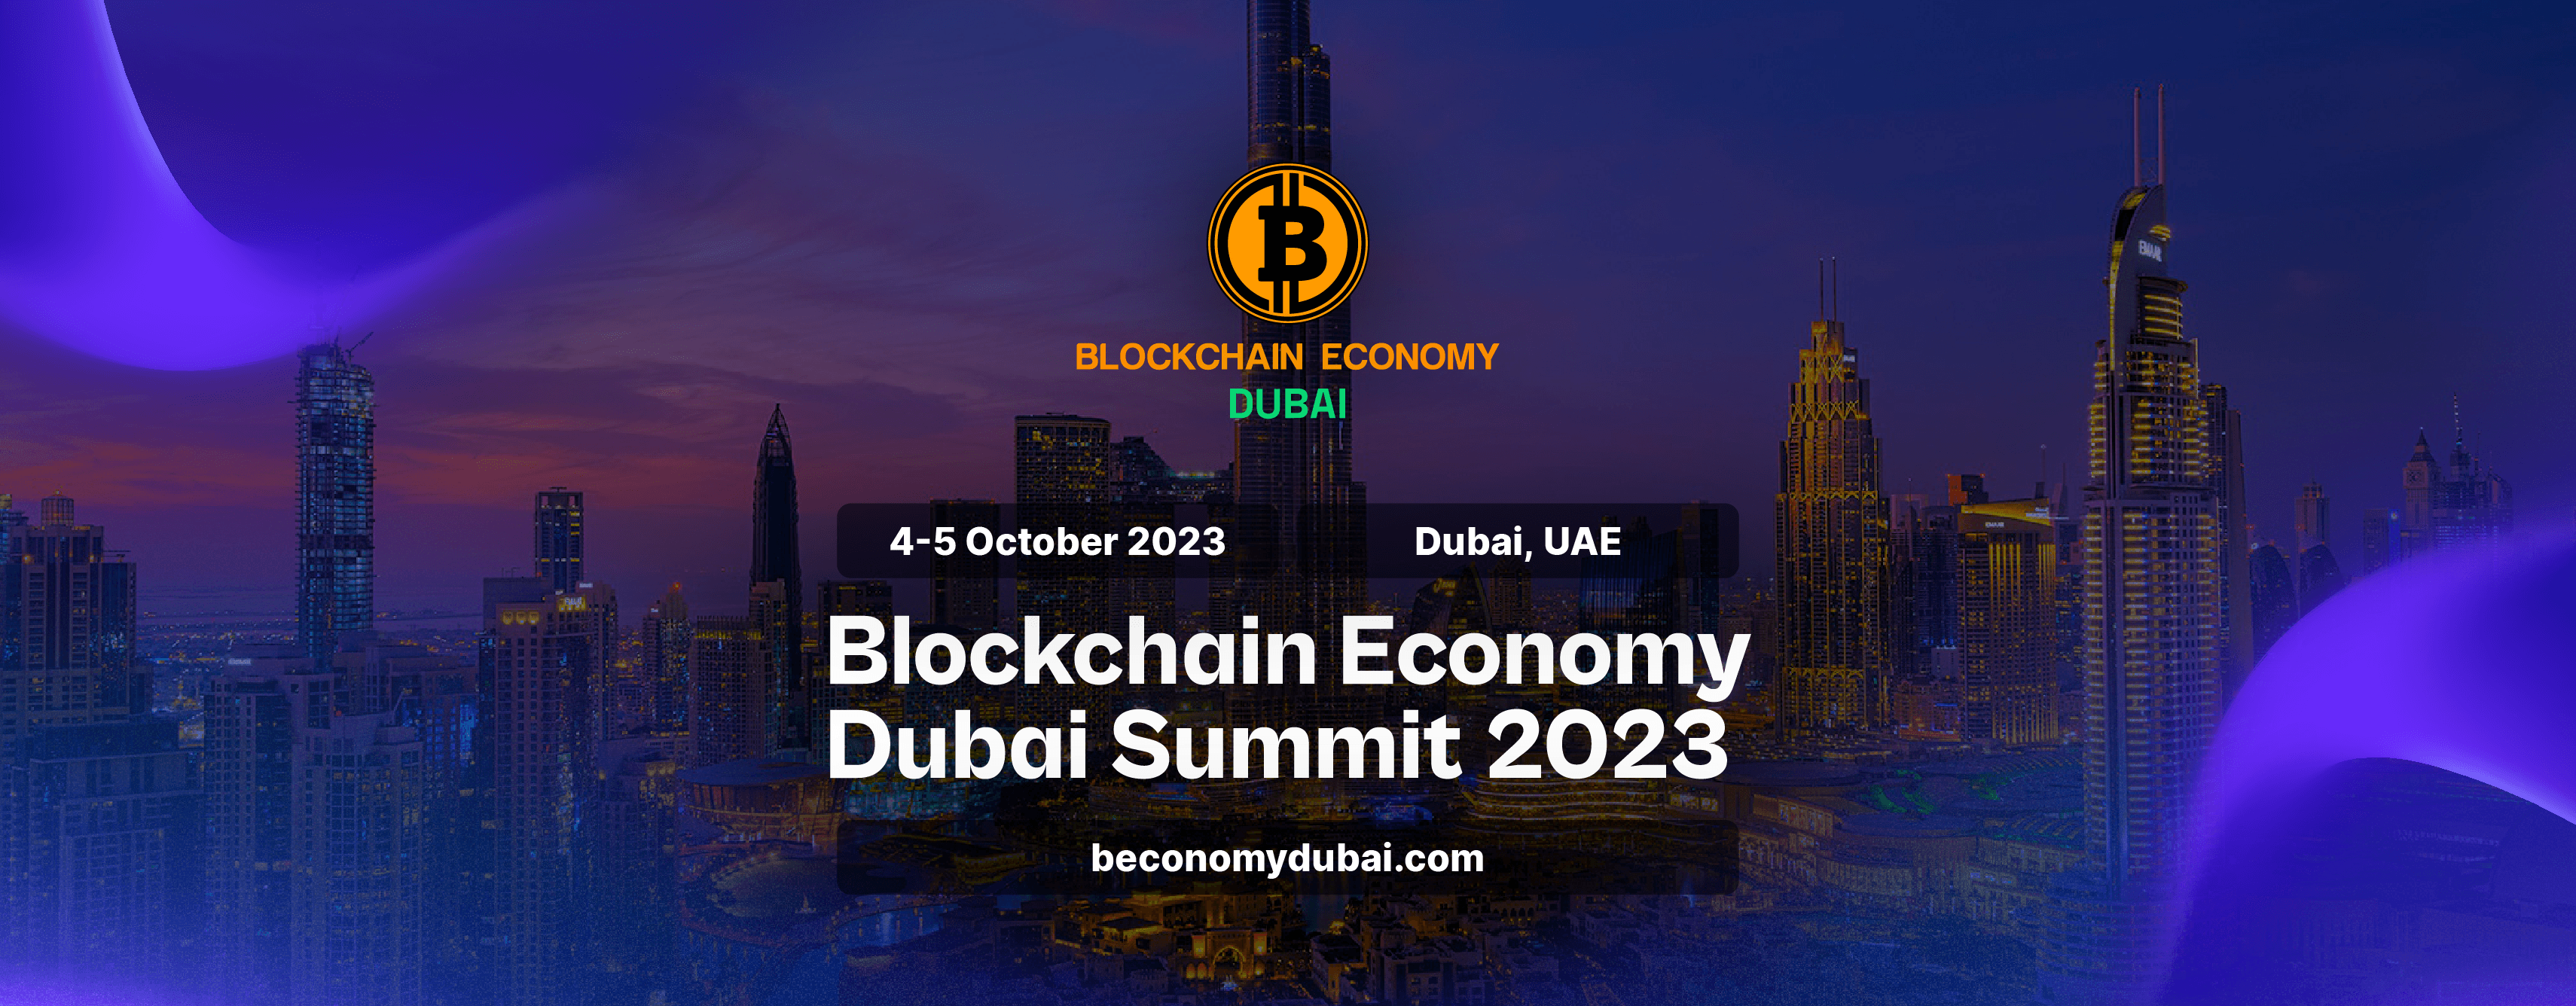 迪拜区块链经济峰会 2023